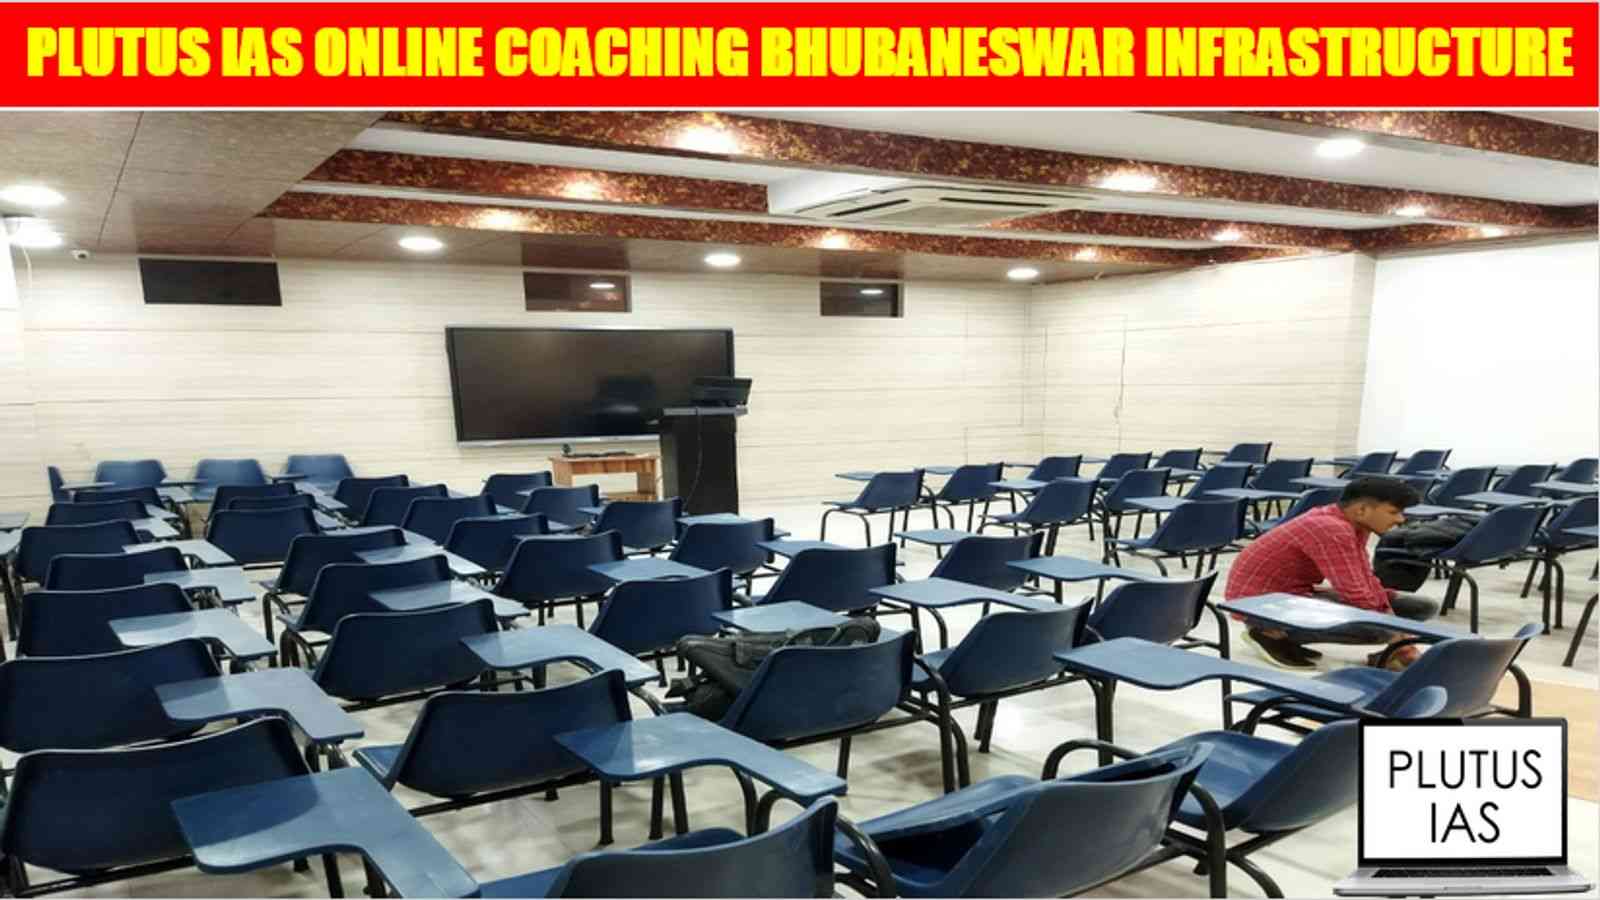 Plutus IAS Online Coaching Bhubaneswar Infrastructure